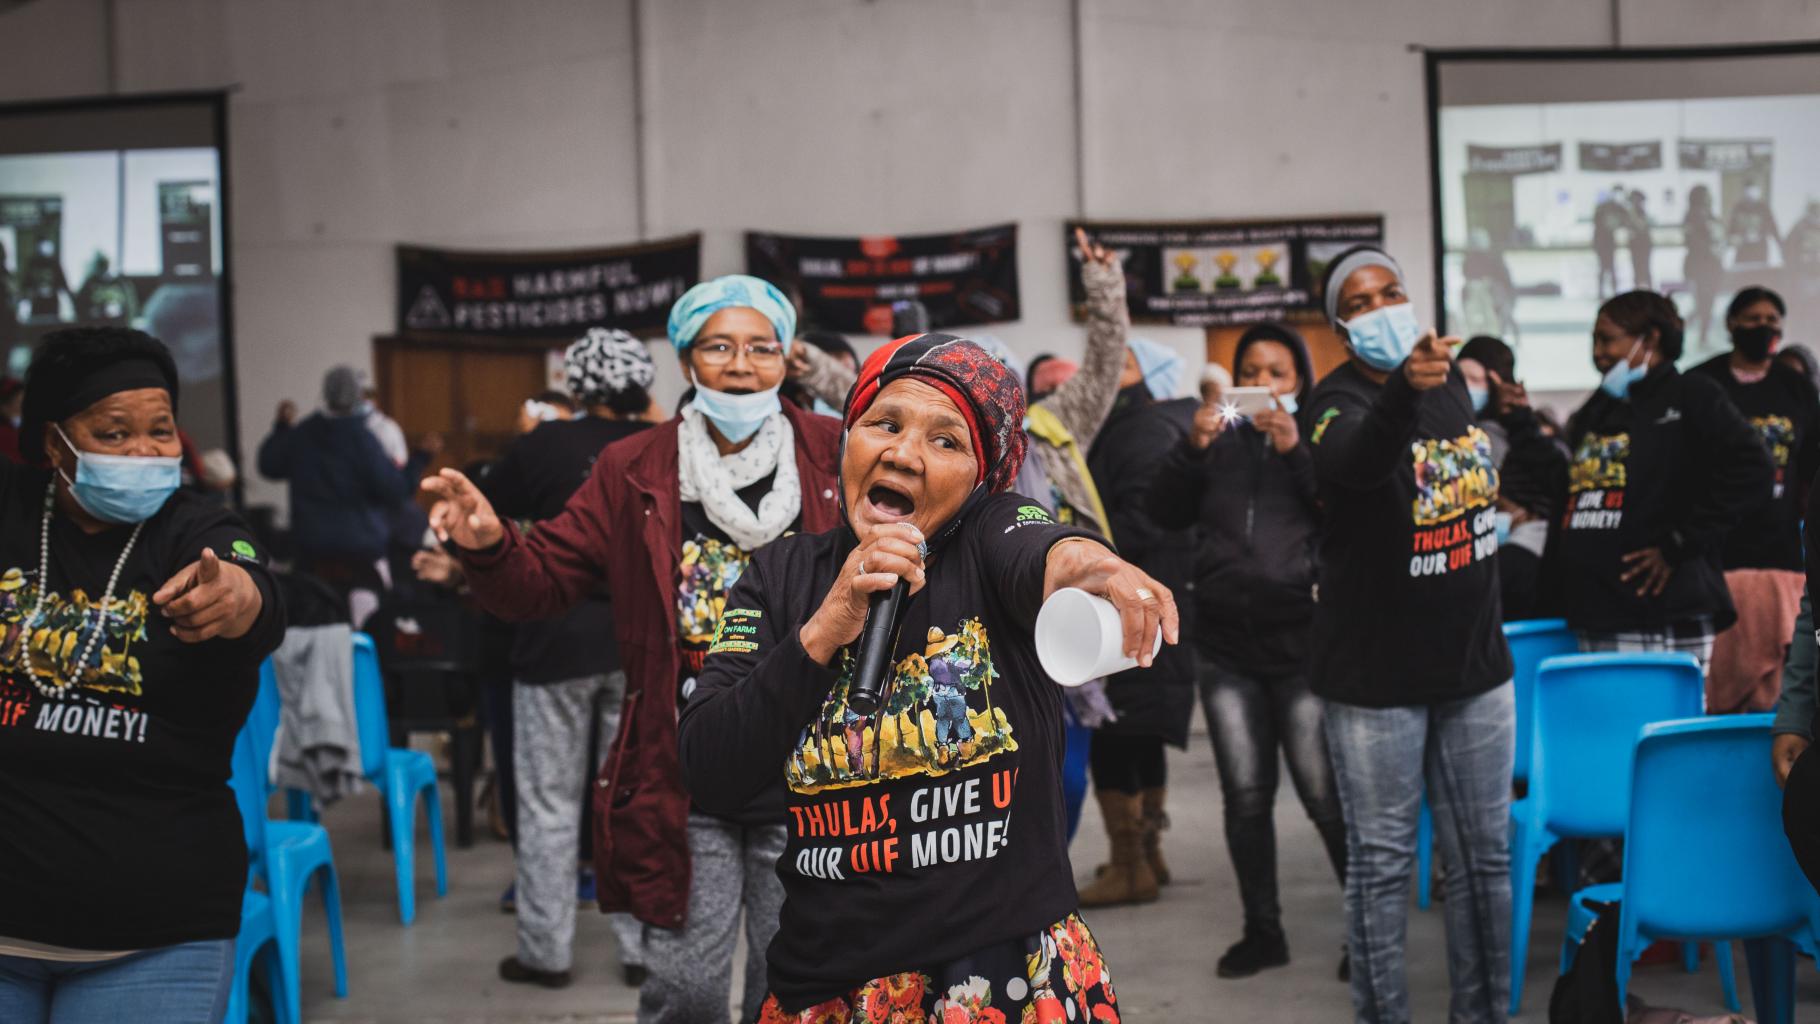 Eine Gruppe von Farmarbeiterinnen singen auf einer Protestaktion mit schwarzen Tshirts mit der Aufschrift "Thulas, give us our money".